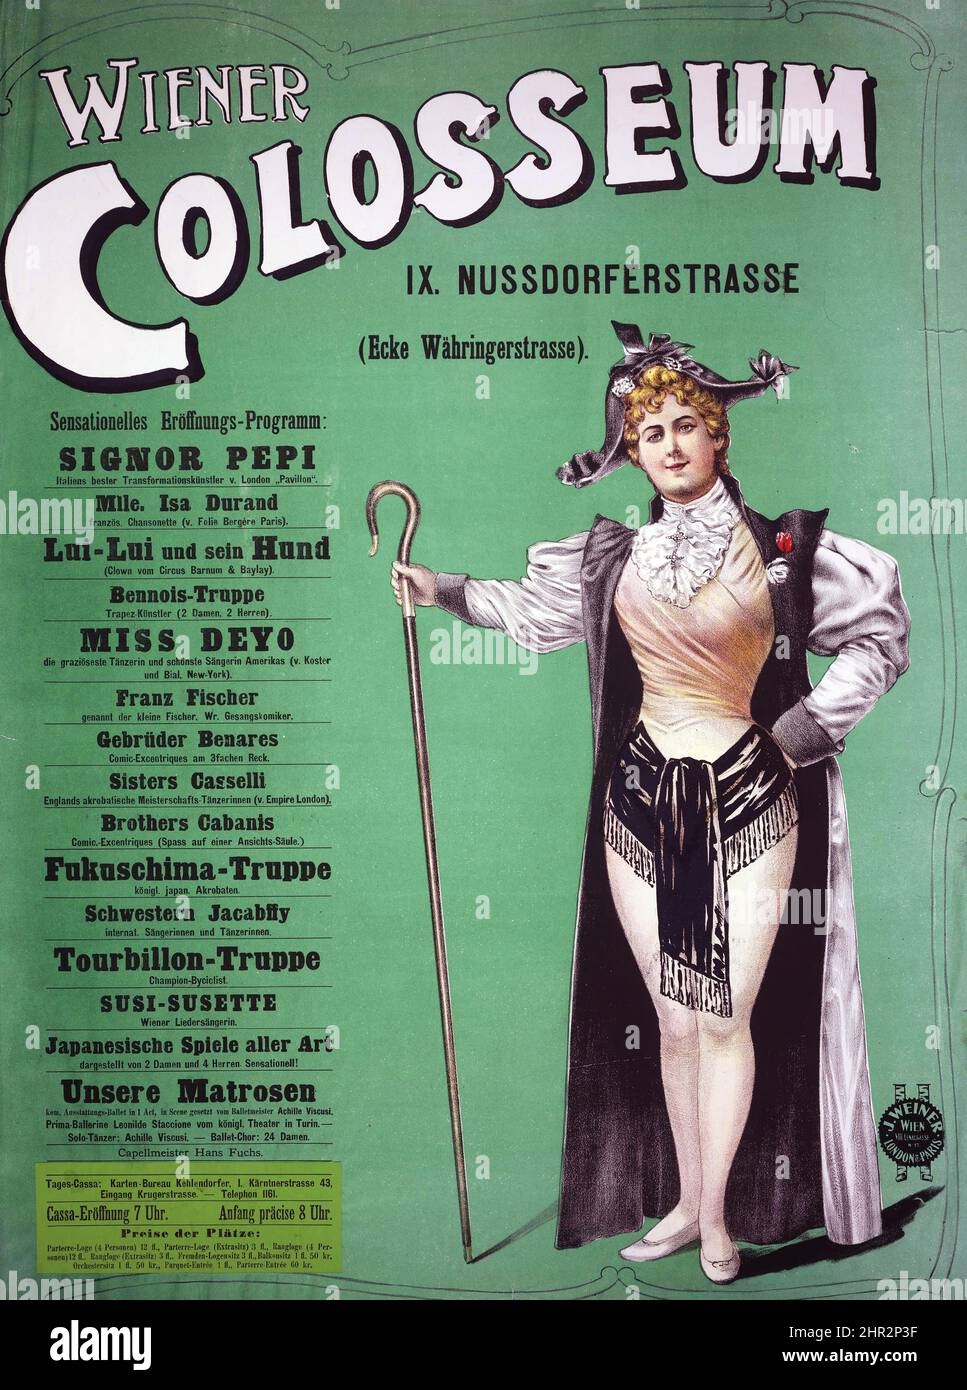 1890 affiche - Wiener Colosseum - affiche publicitaire vintage, auteur inconnu. Banque D'Images